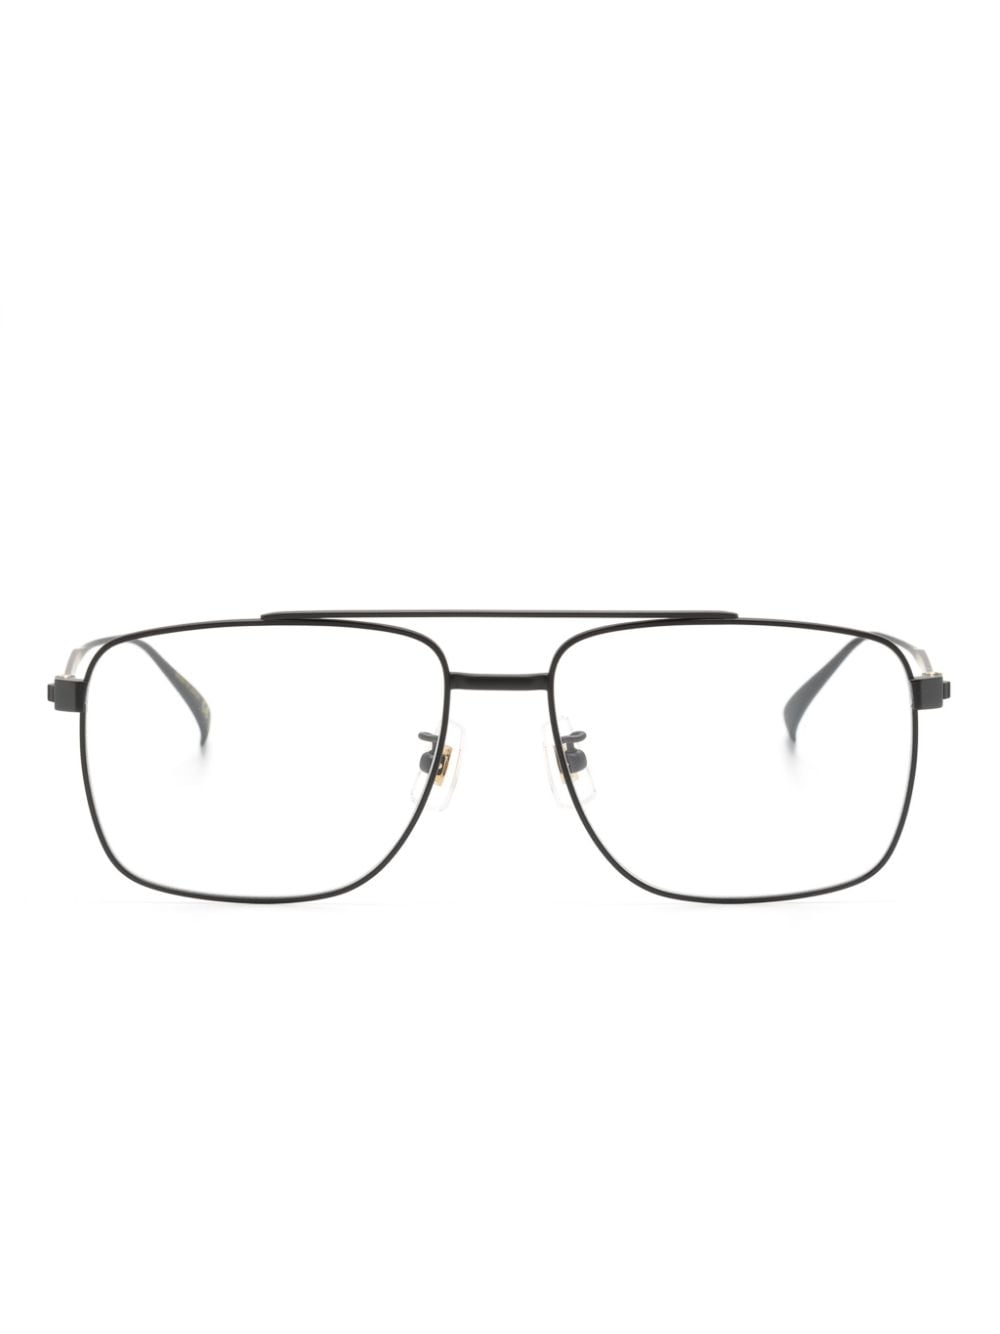 Dunhill Brille mit Pilotengestell - Schwarz